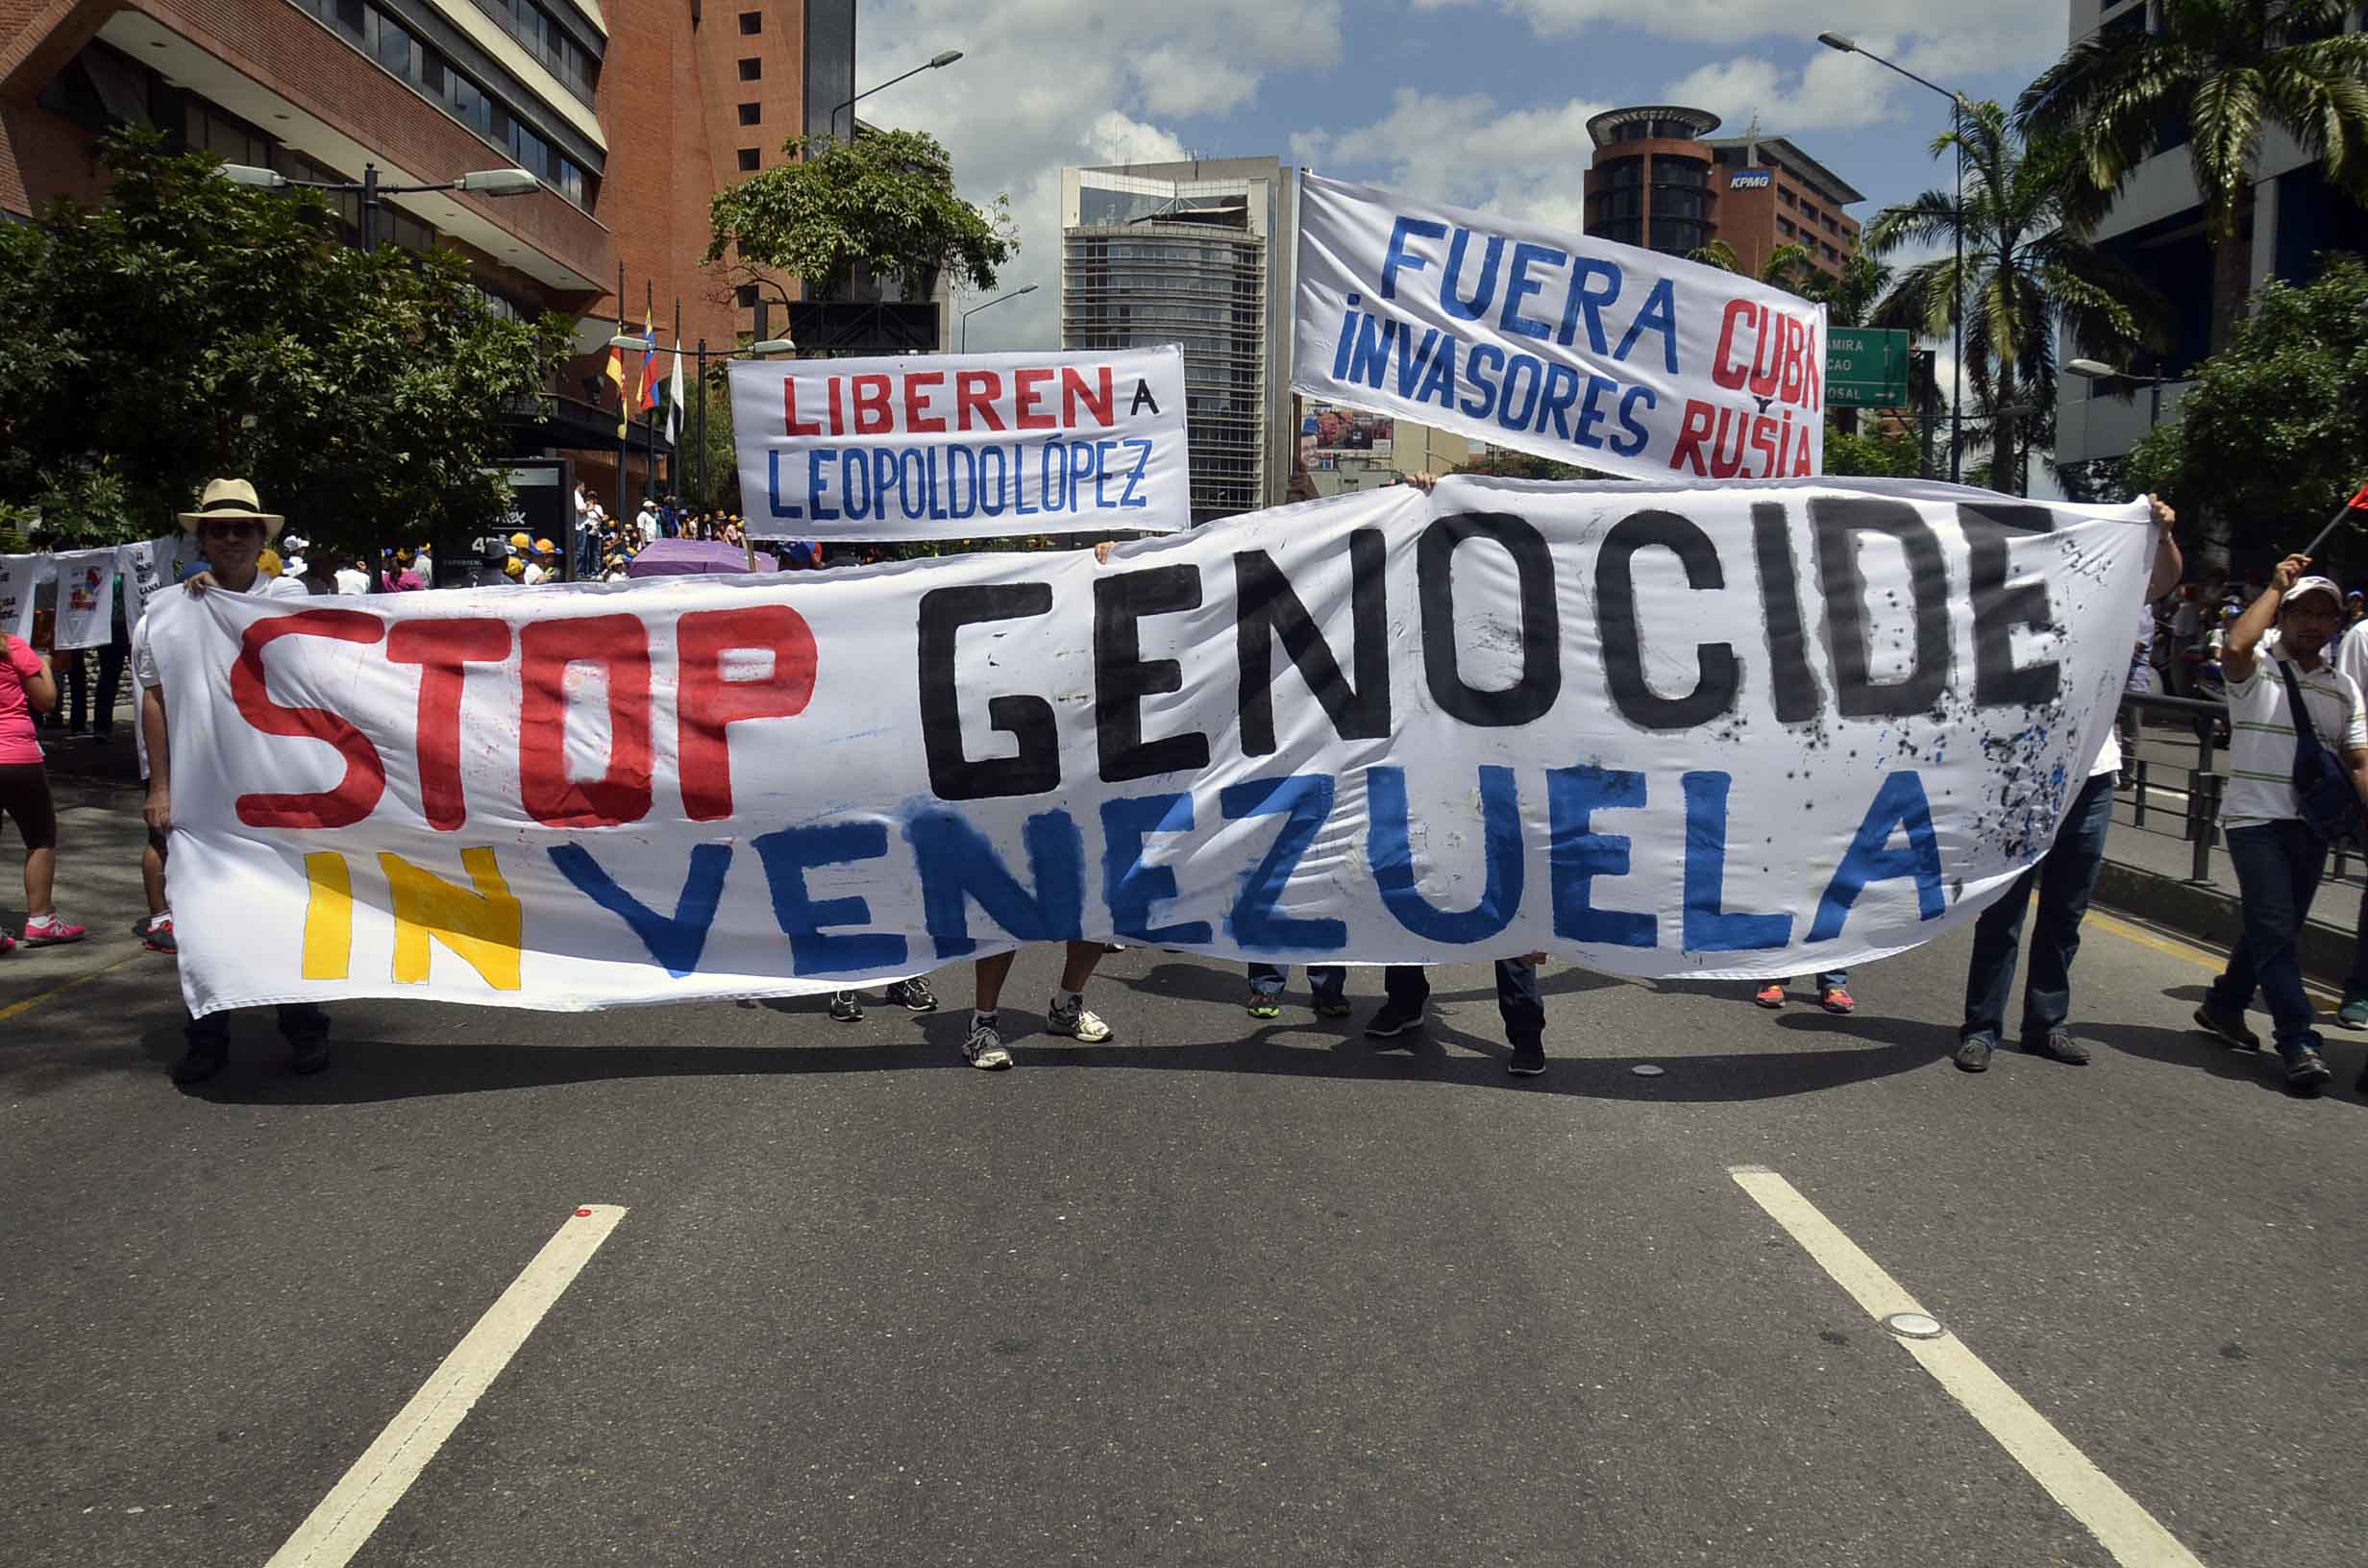 El Nuevo Herald: Influencia del crimen organizado complica solución en Venezuela